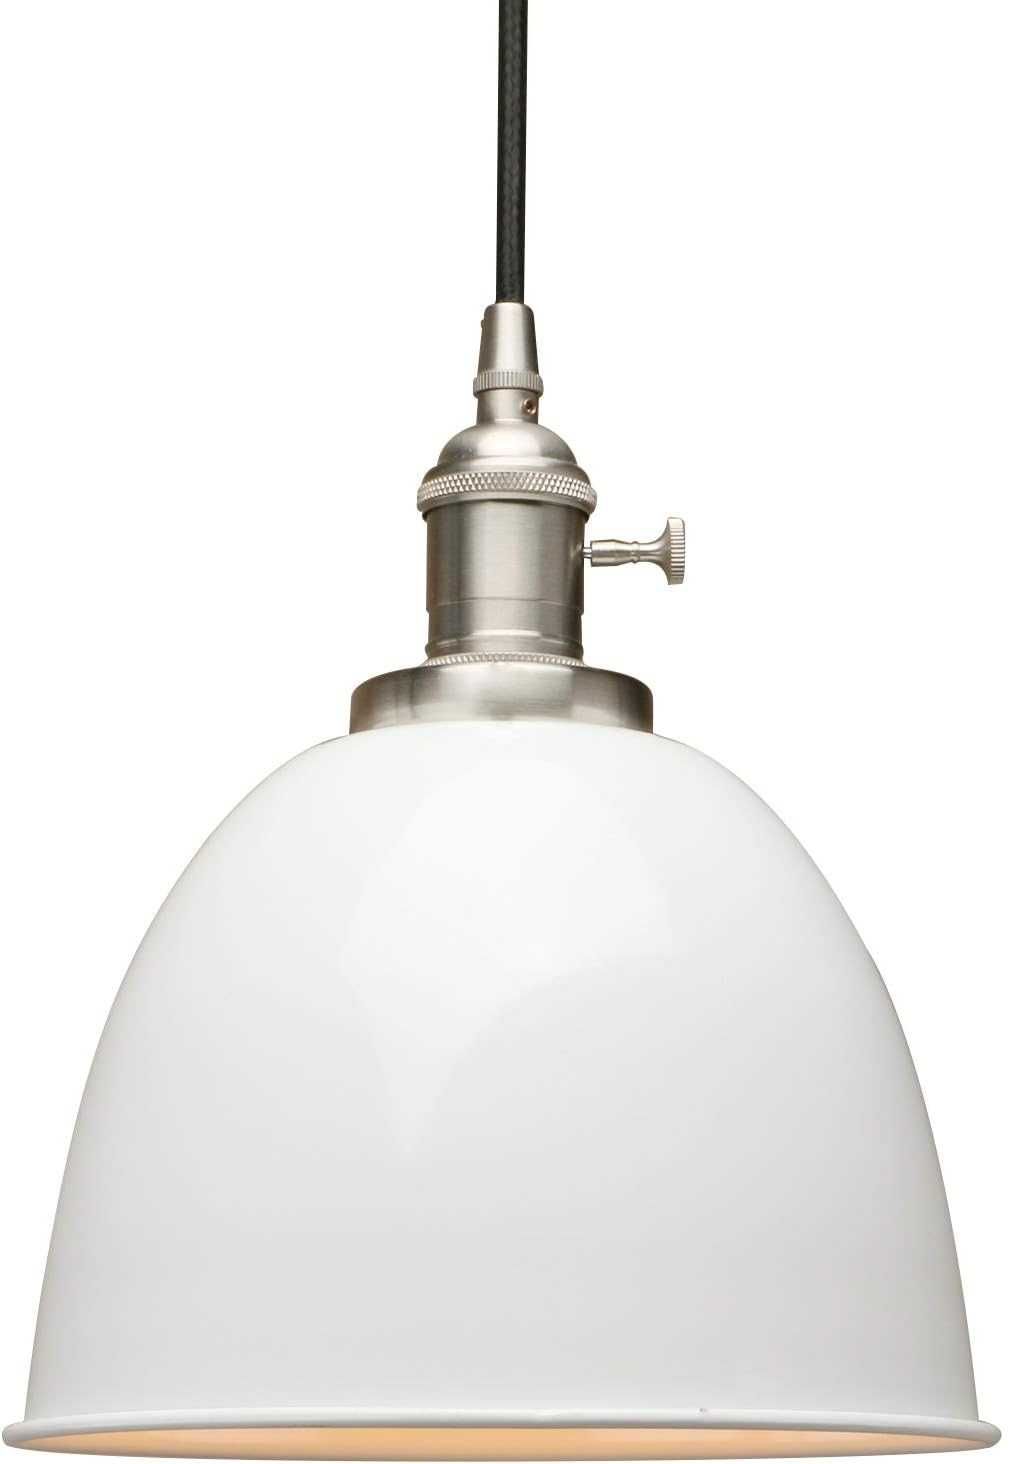 Lampa przemysłowa Yosoan vintage Edison Amazon